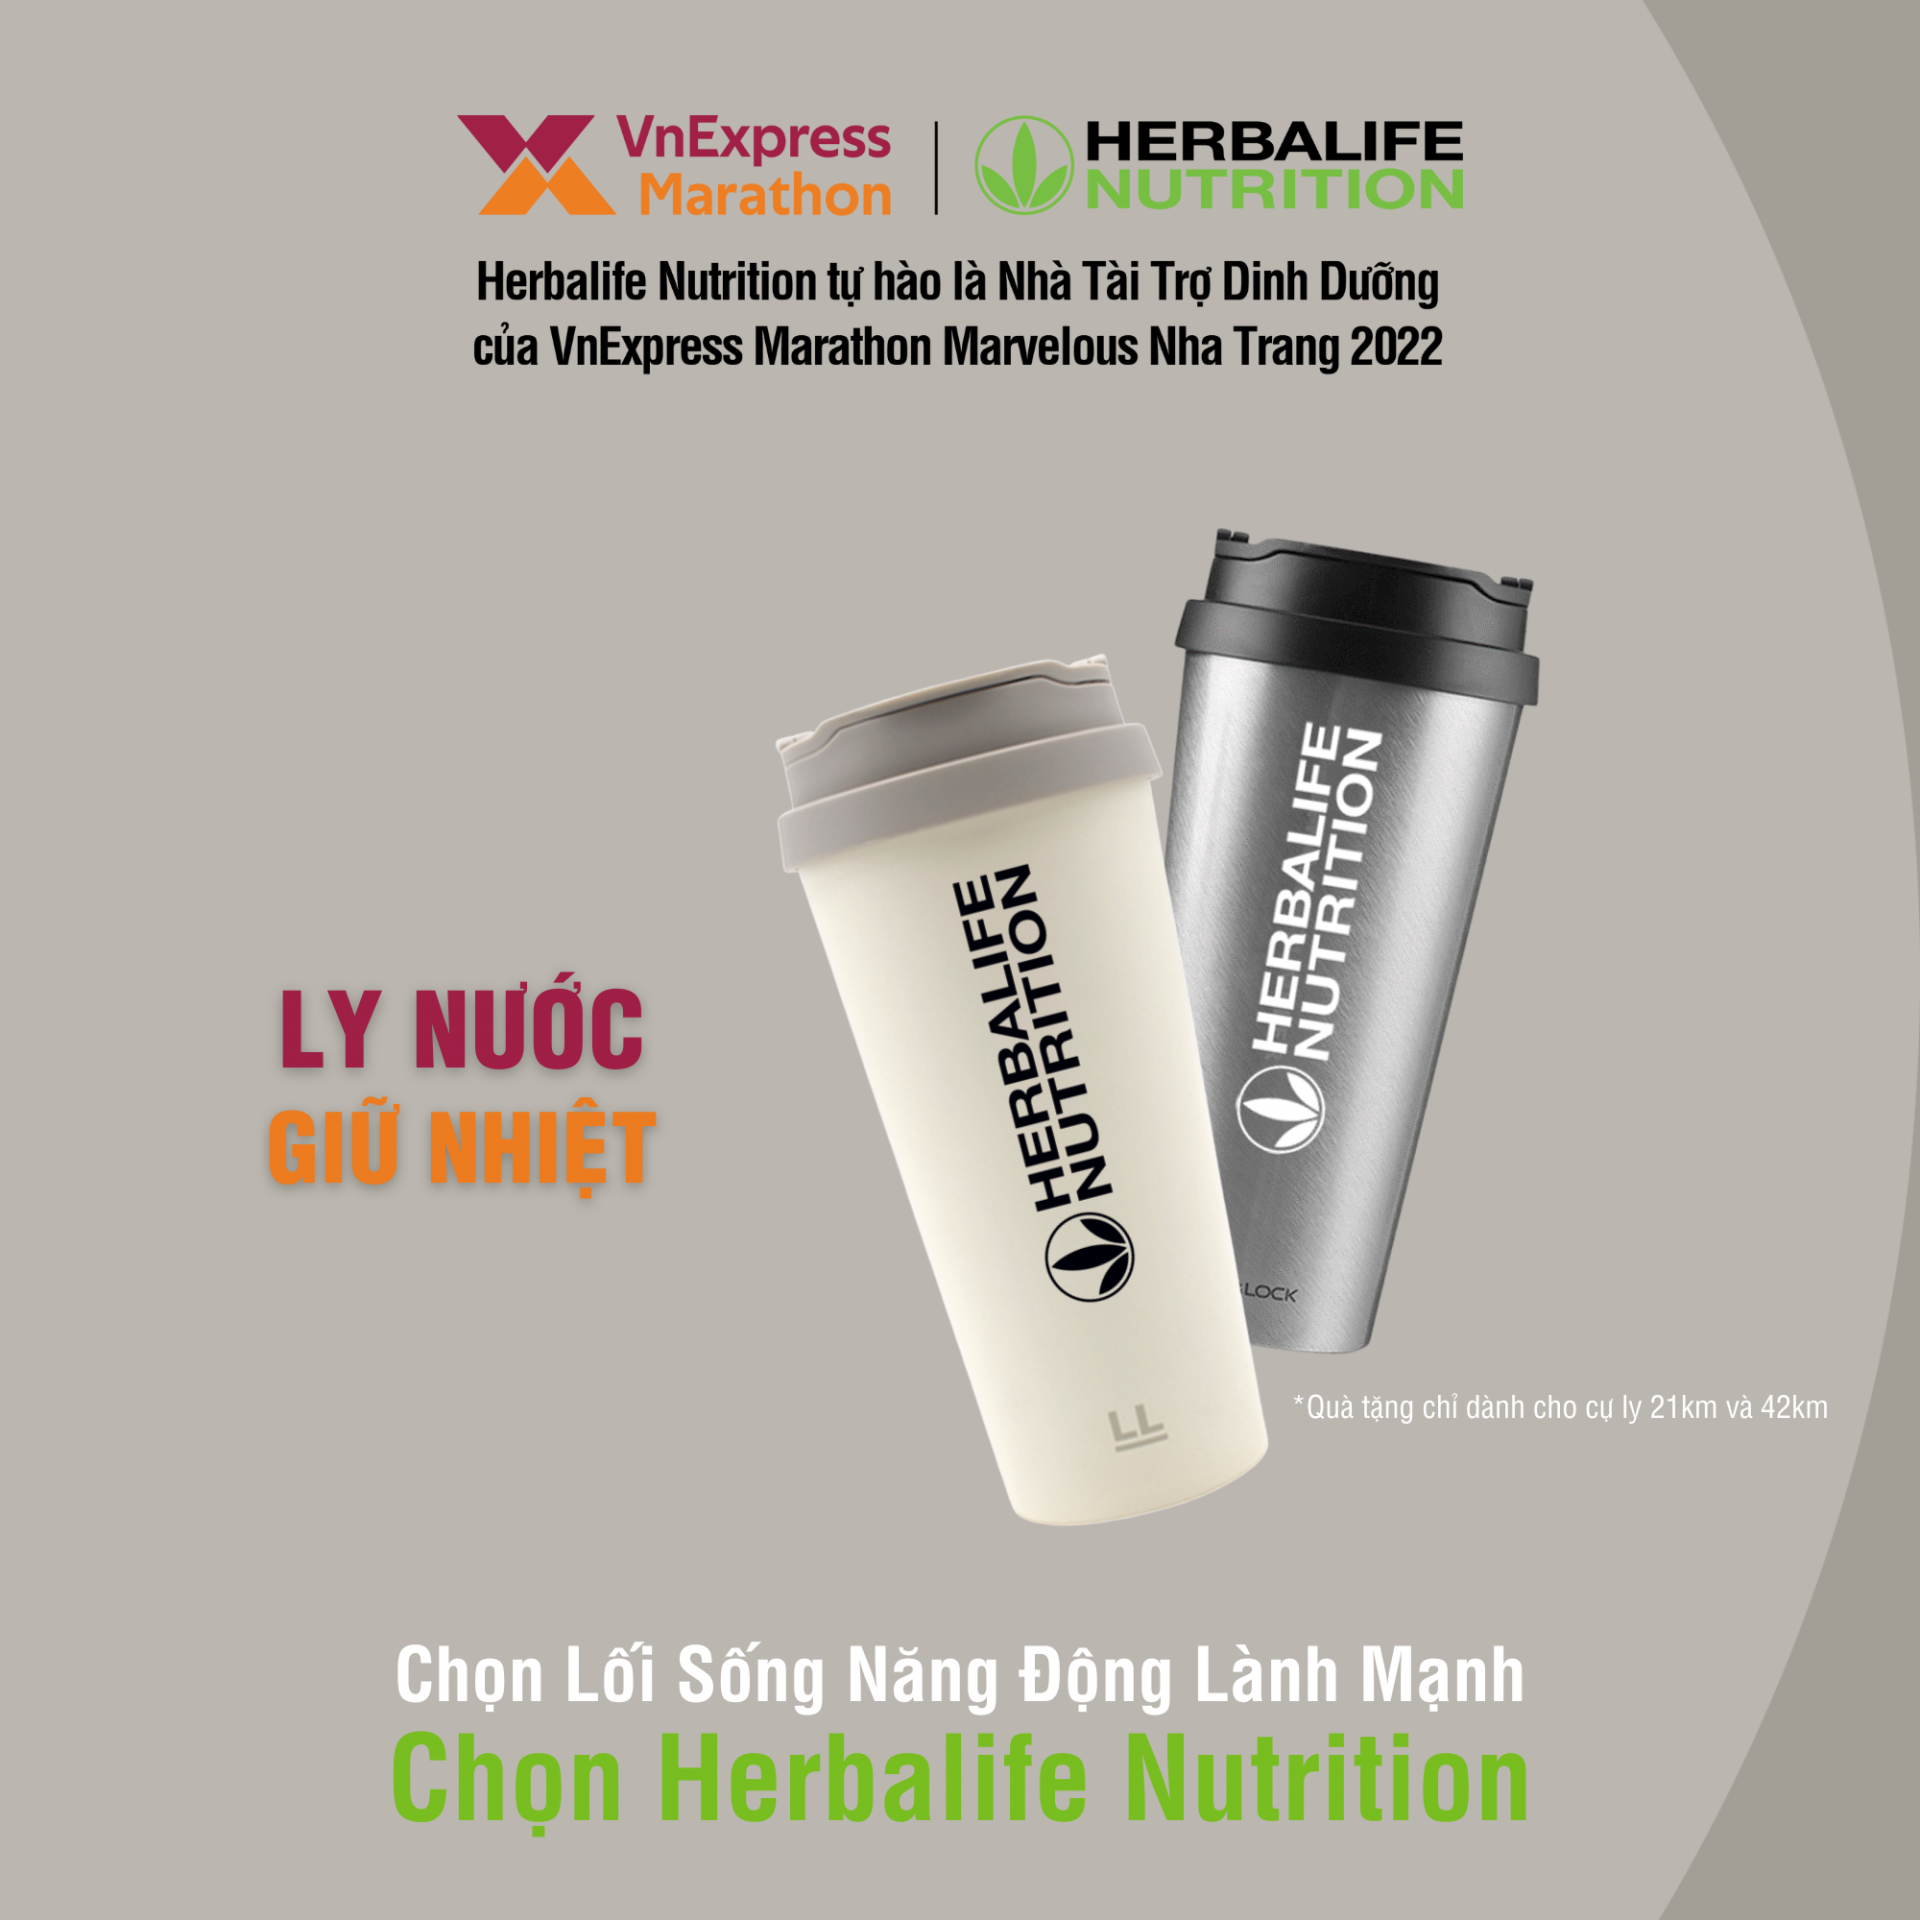 Herbalife Việt Nam sẽ dành tặng thêm ly giữ nhiệt trong bộ Race kit cho các vận động viên tham gia cự ly 21km và 42km